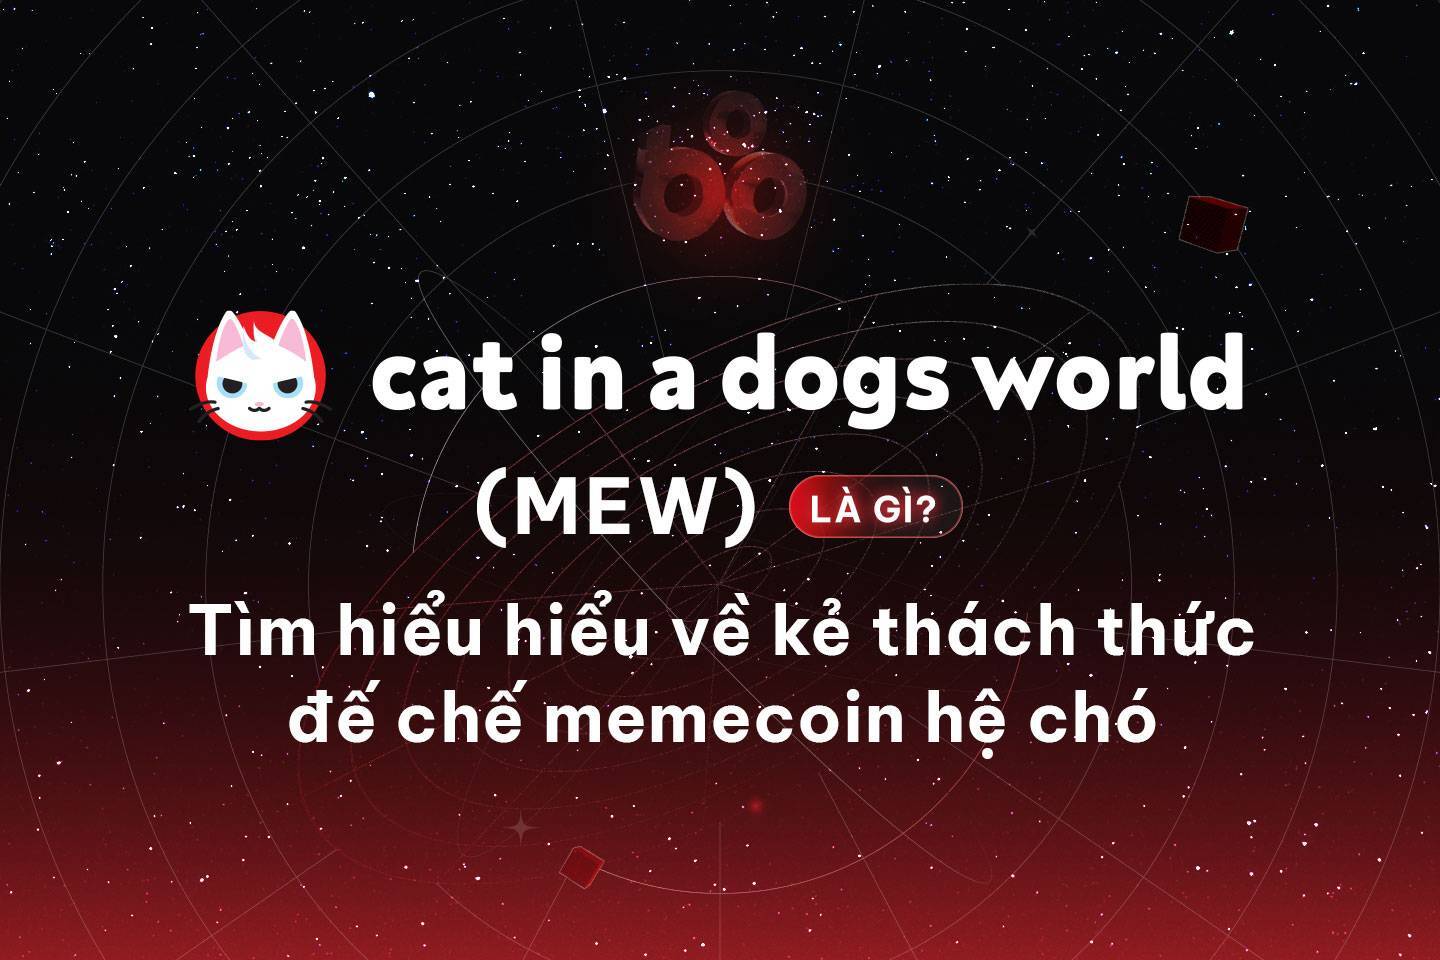 Cat In A Dogs World mew Là Gì Tìm Hiểu Hiểu Về Kẻ Thách Thức đế Chế Memecoin Hệ Chó